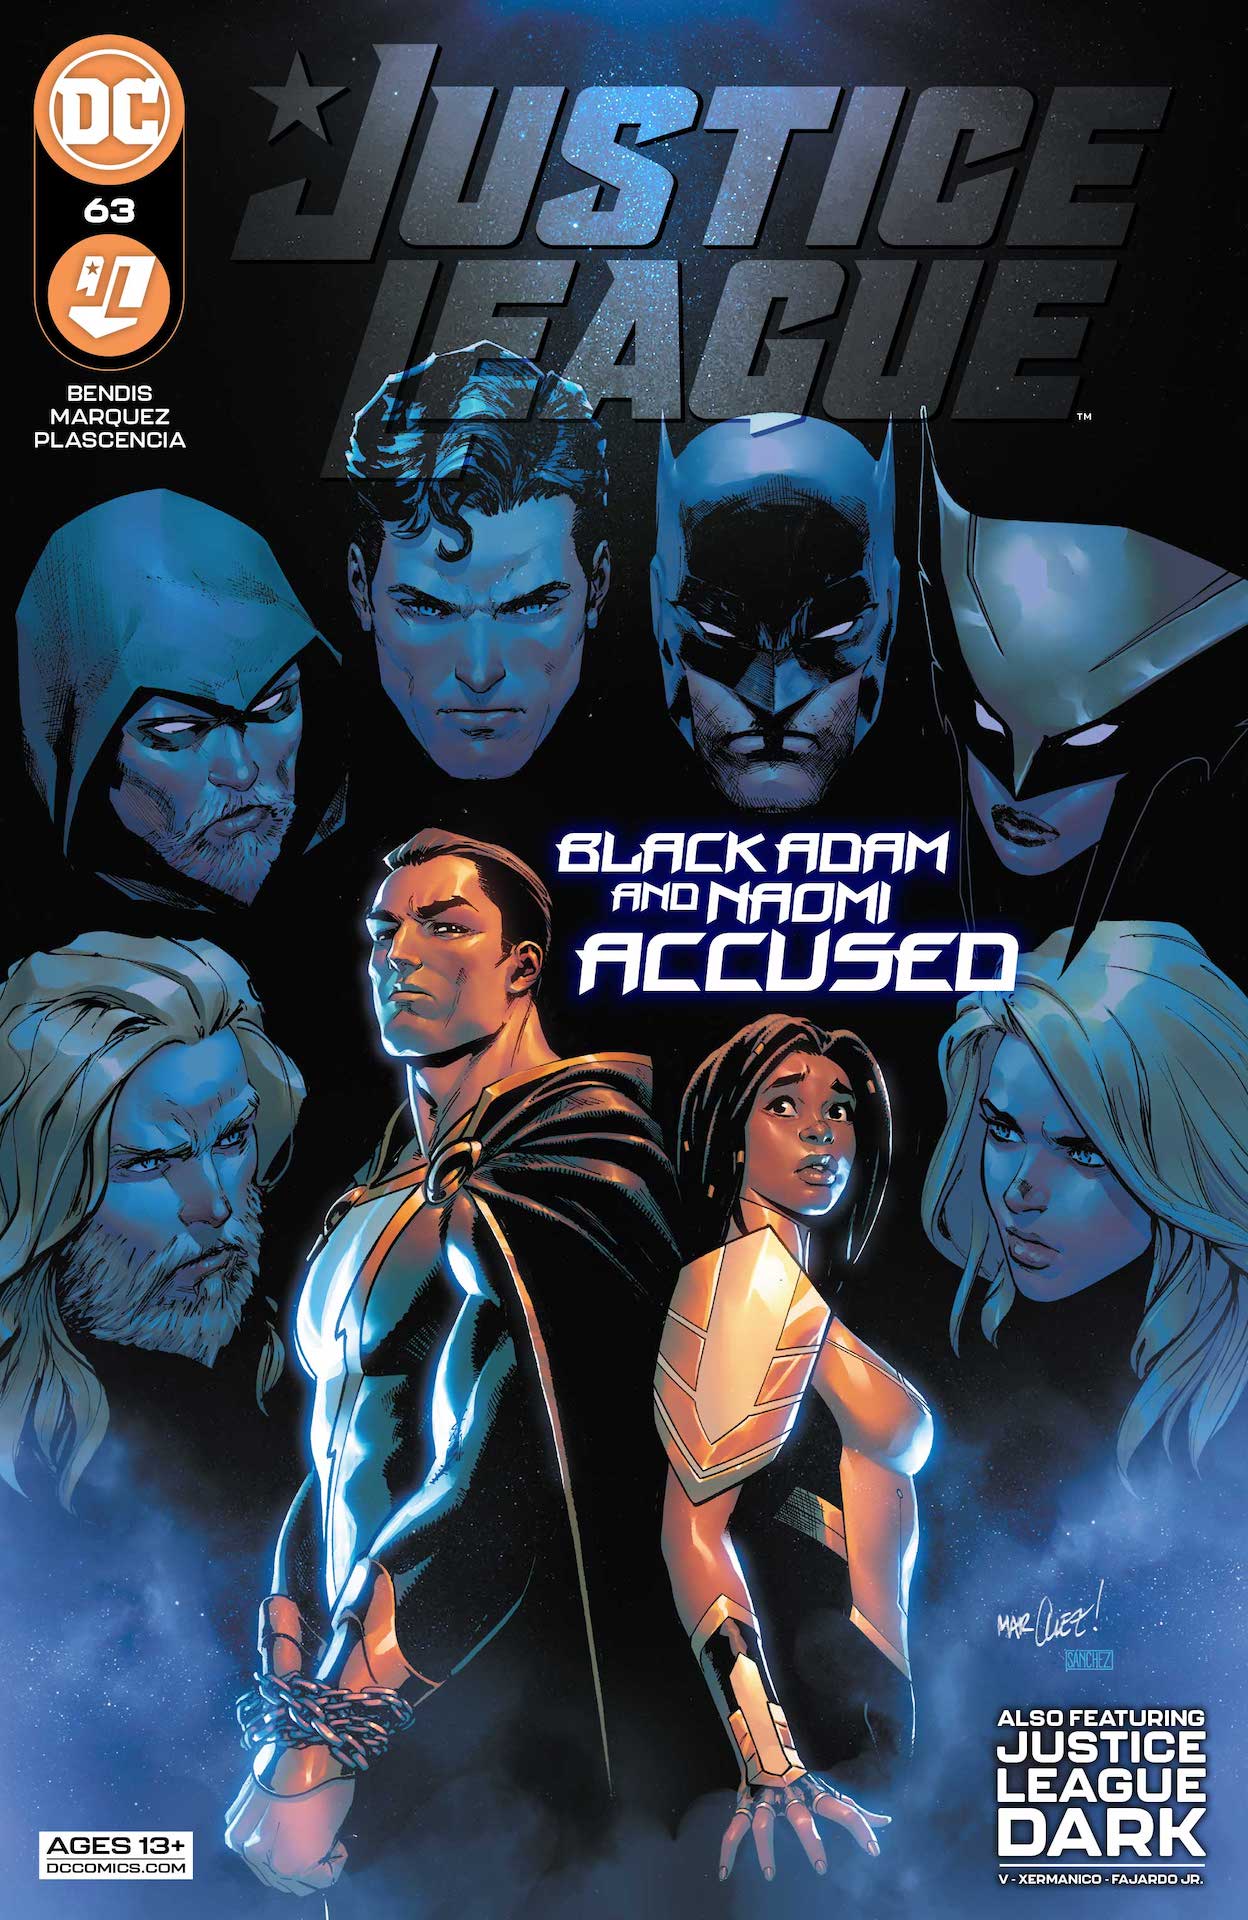 DC Preview: Justice League #63